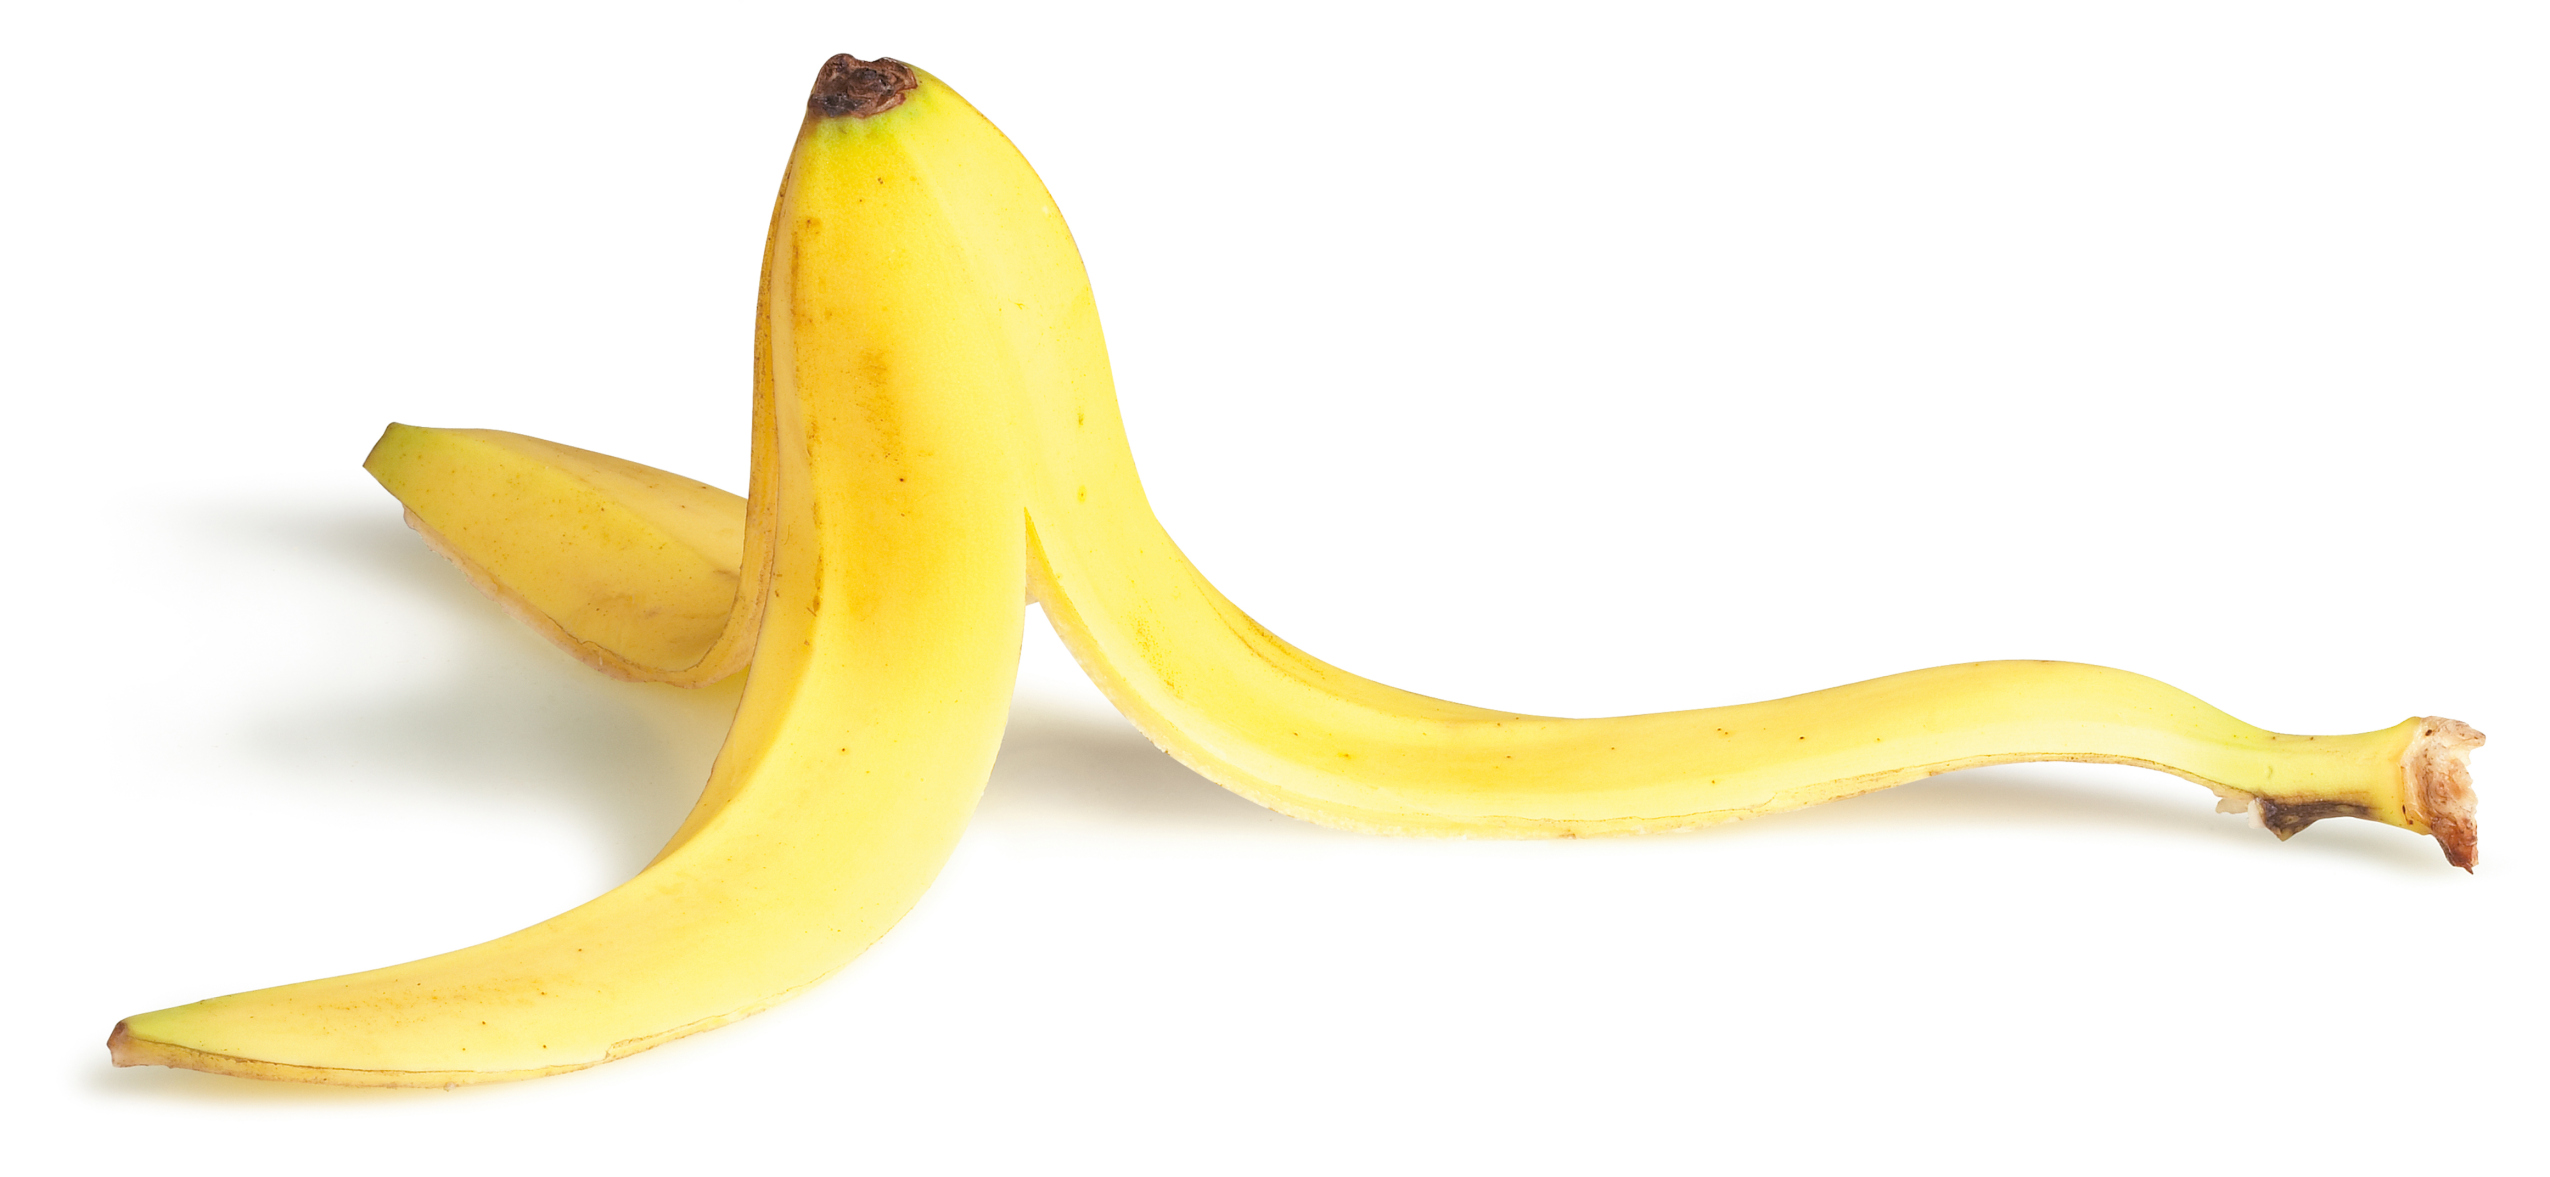 5 Amazing Uses For Banana Peels Banana Peel Benefits